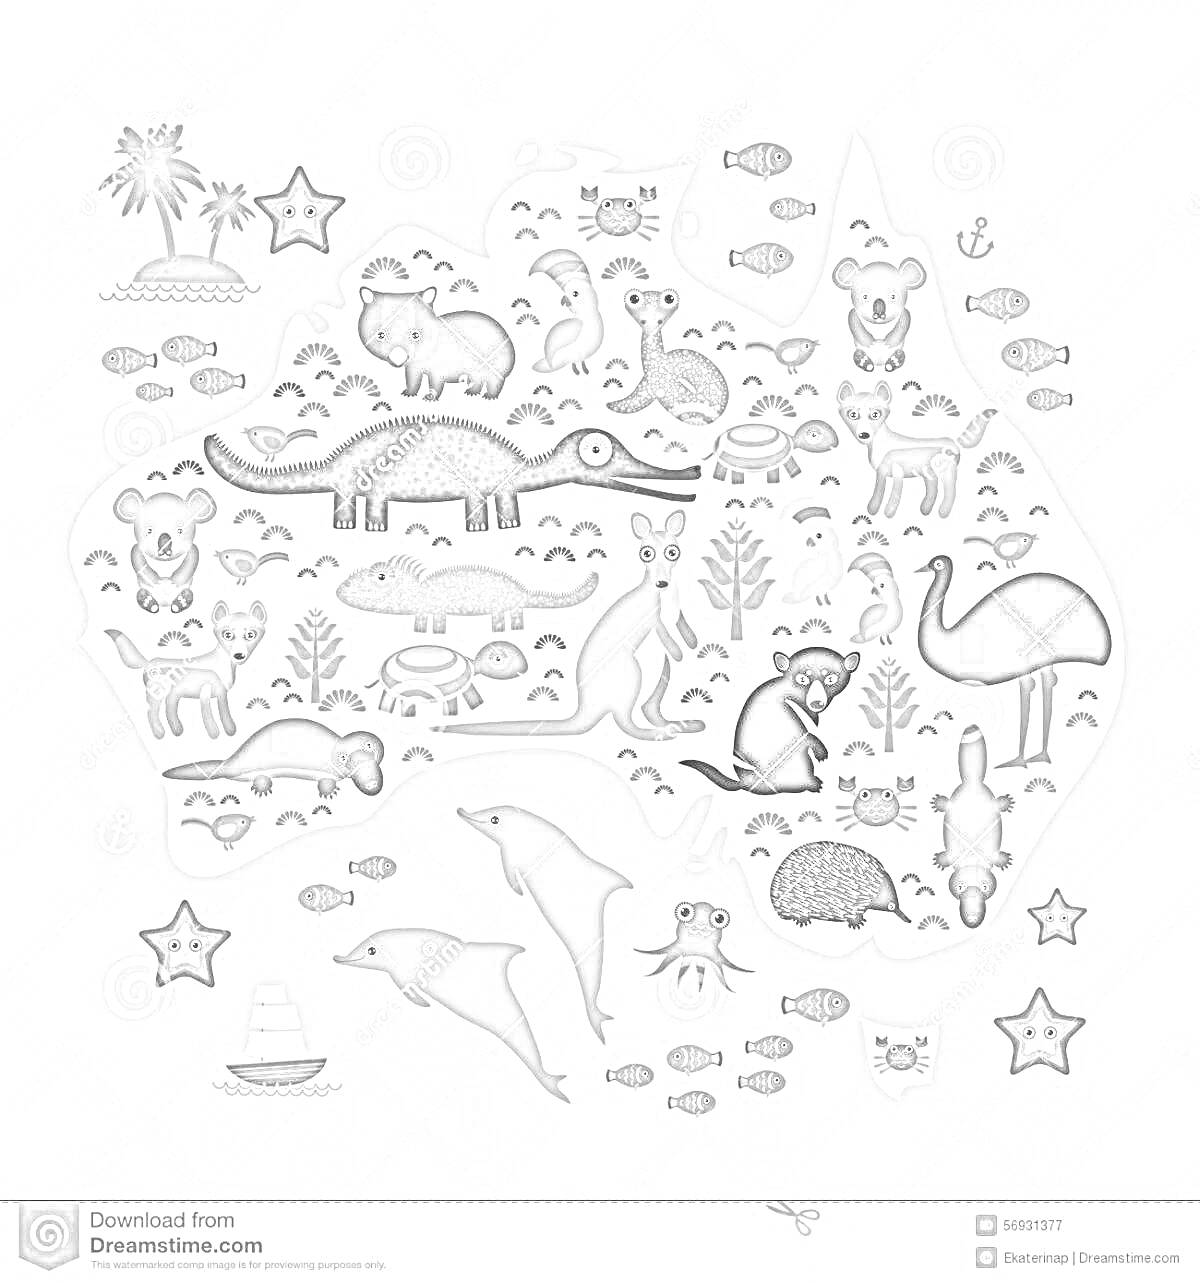 На раскраске изображено: Австралия, Животные, Крокодилы, Коалы, Кенгуру, Эму, Ящерицы, Дельфины, Осьминоги, Пальмы, Звезды